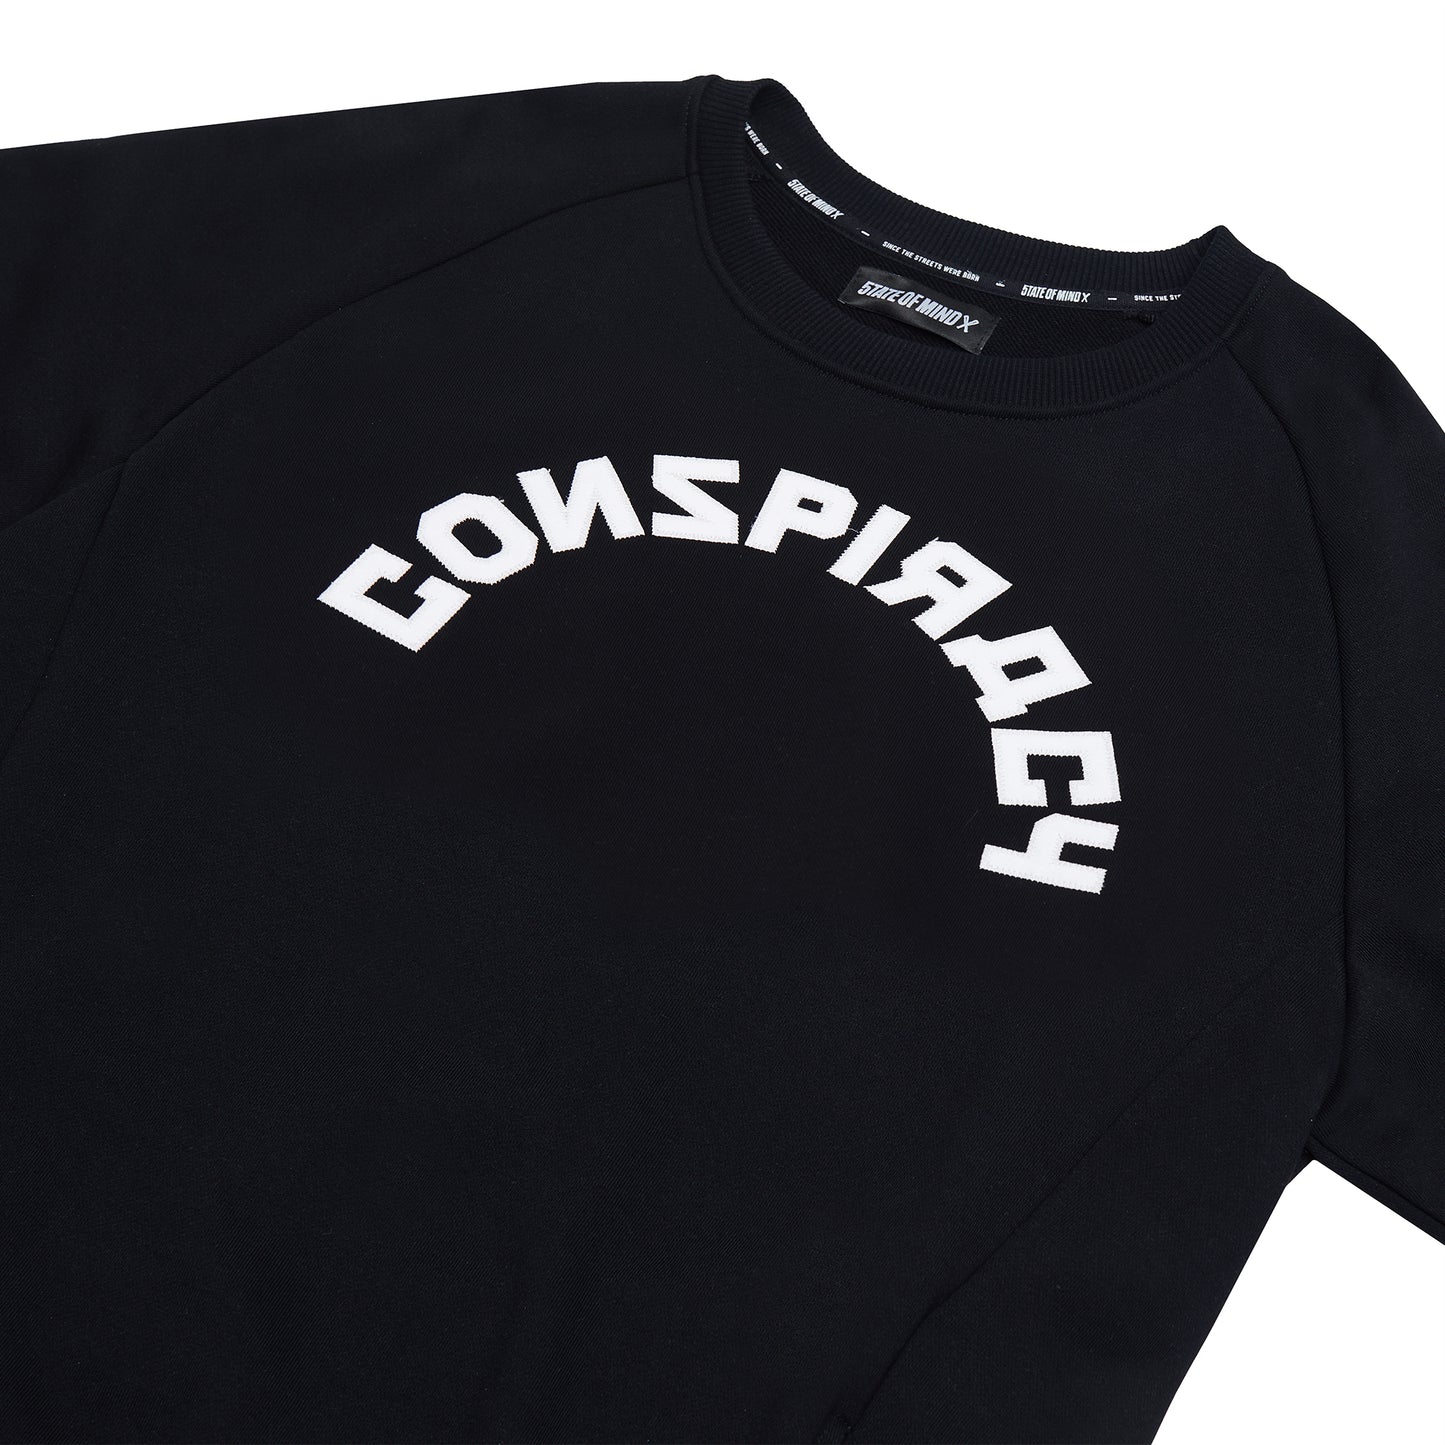 "CONSPIRACY" Sweatshirt Black